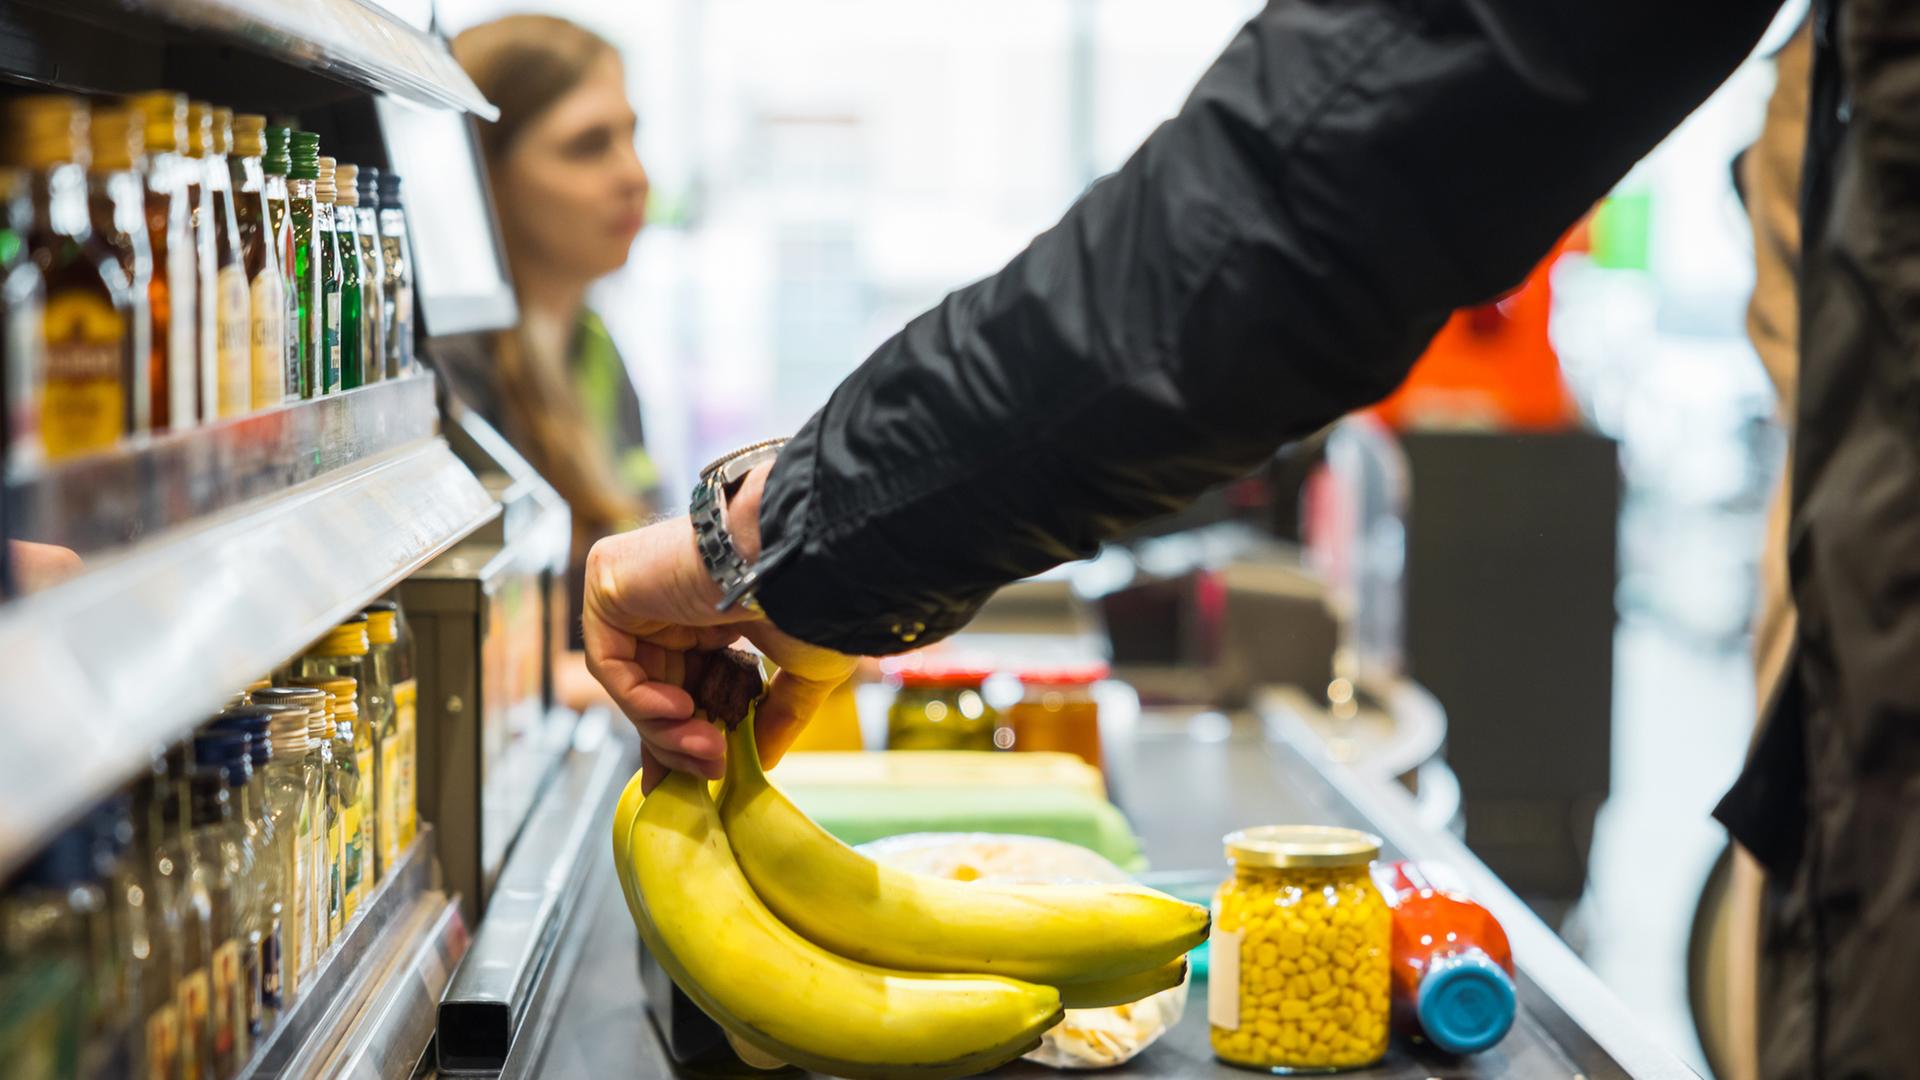 Person legt Bananen zusammen mit anderen Artikeln auf das Förderband an der Supermarktkasse, während im Hintergrund eine Kassiererin zu sehen ist.